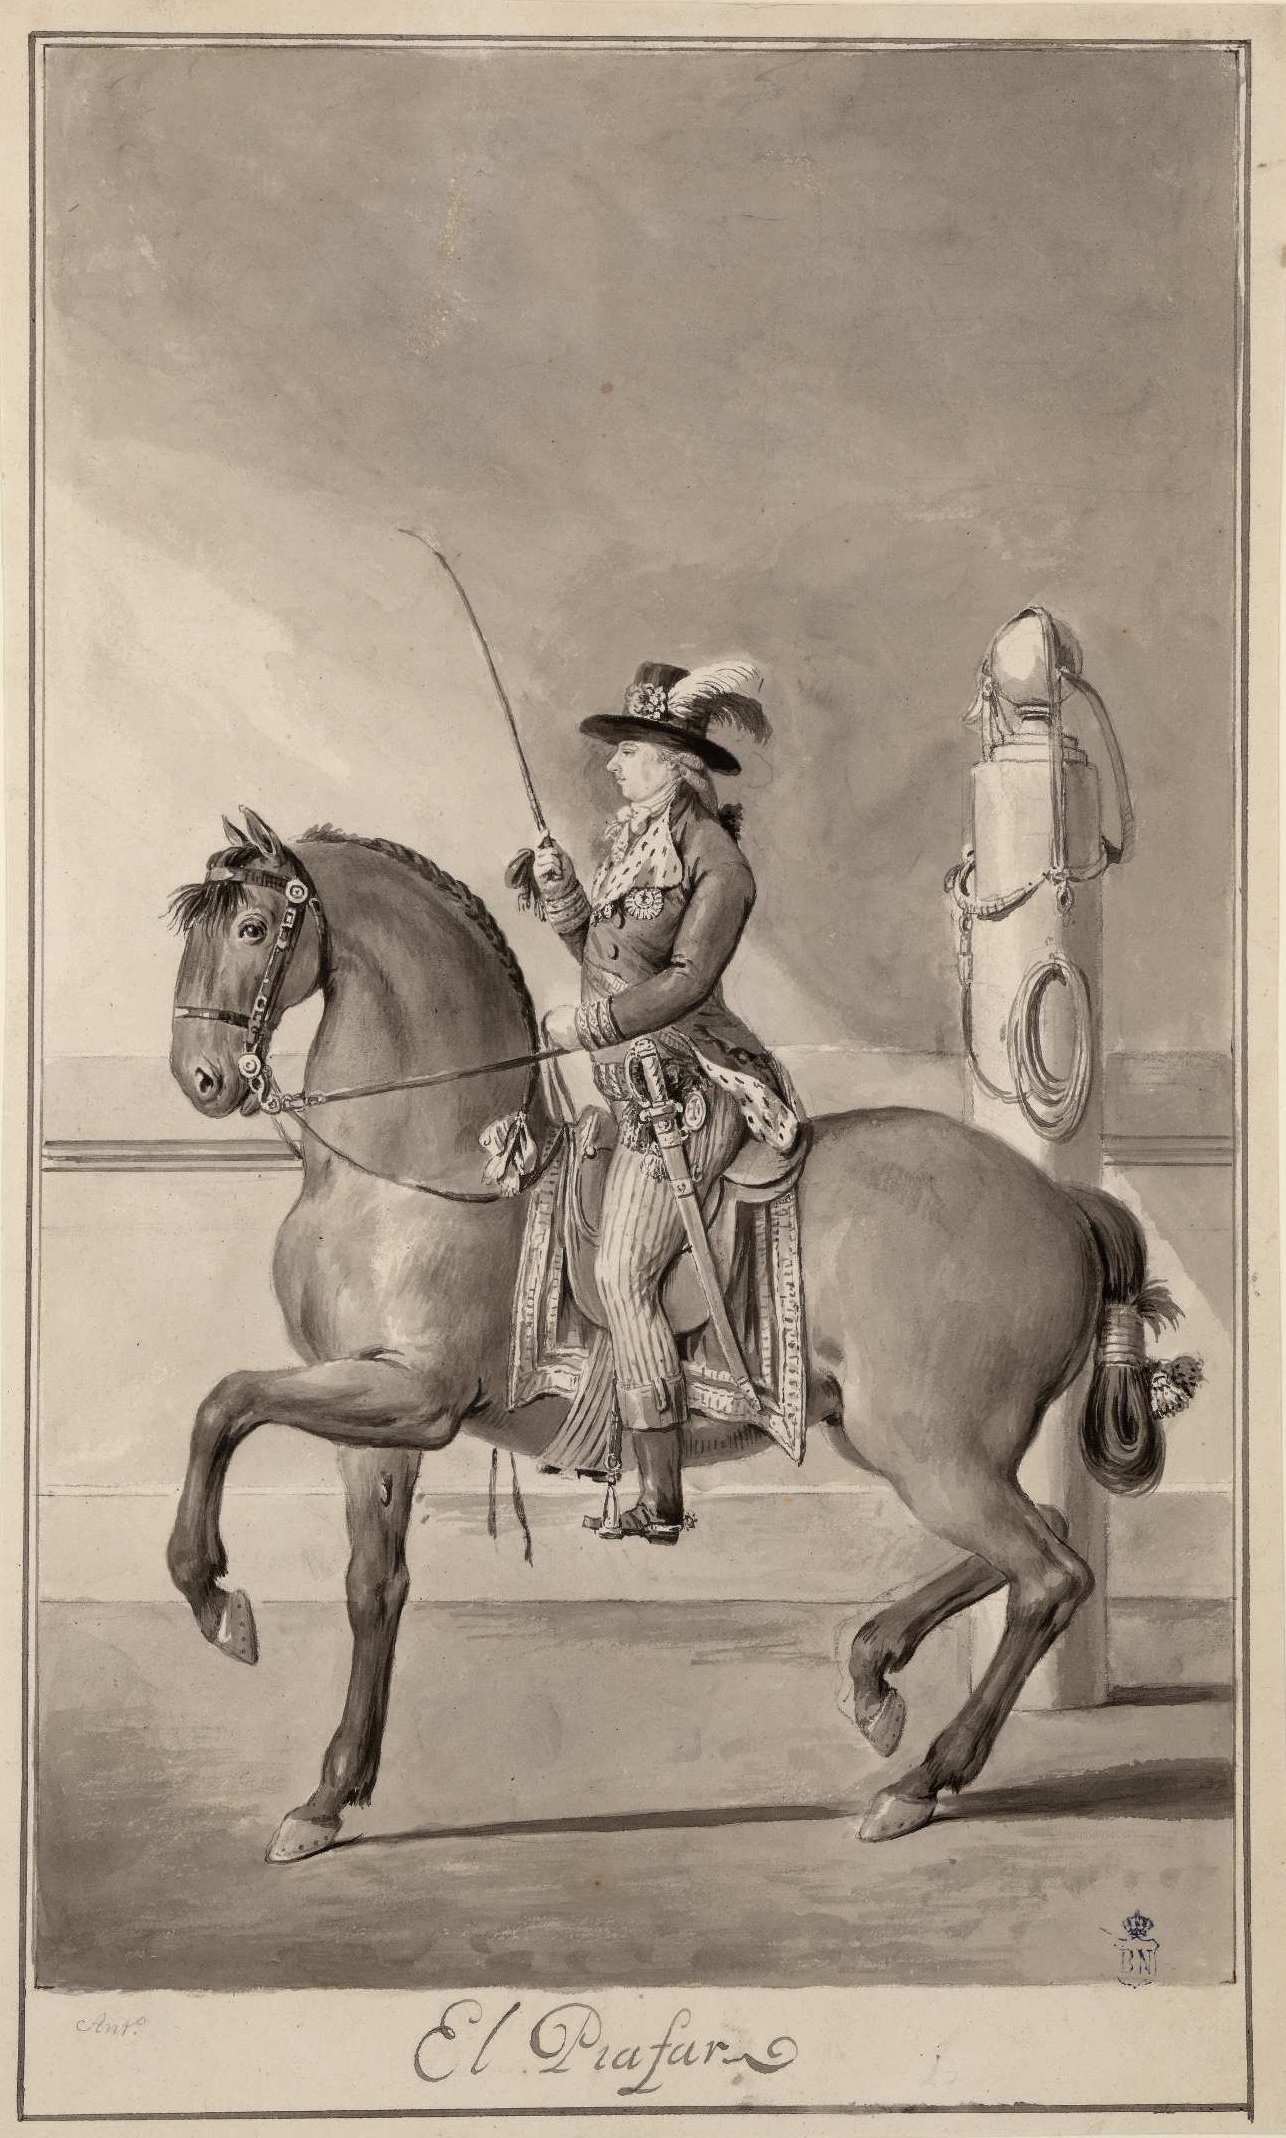 El “Real Picadero de Carlos IV” y los dibujos de Antonio Carnicero